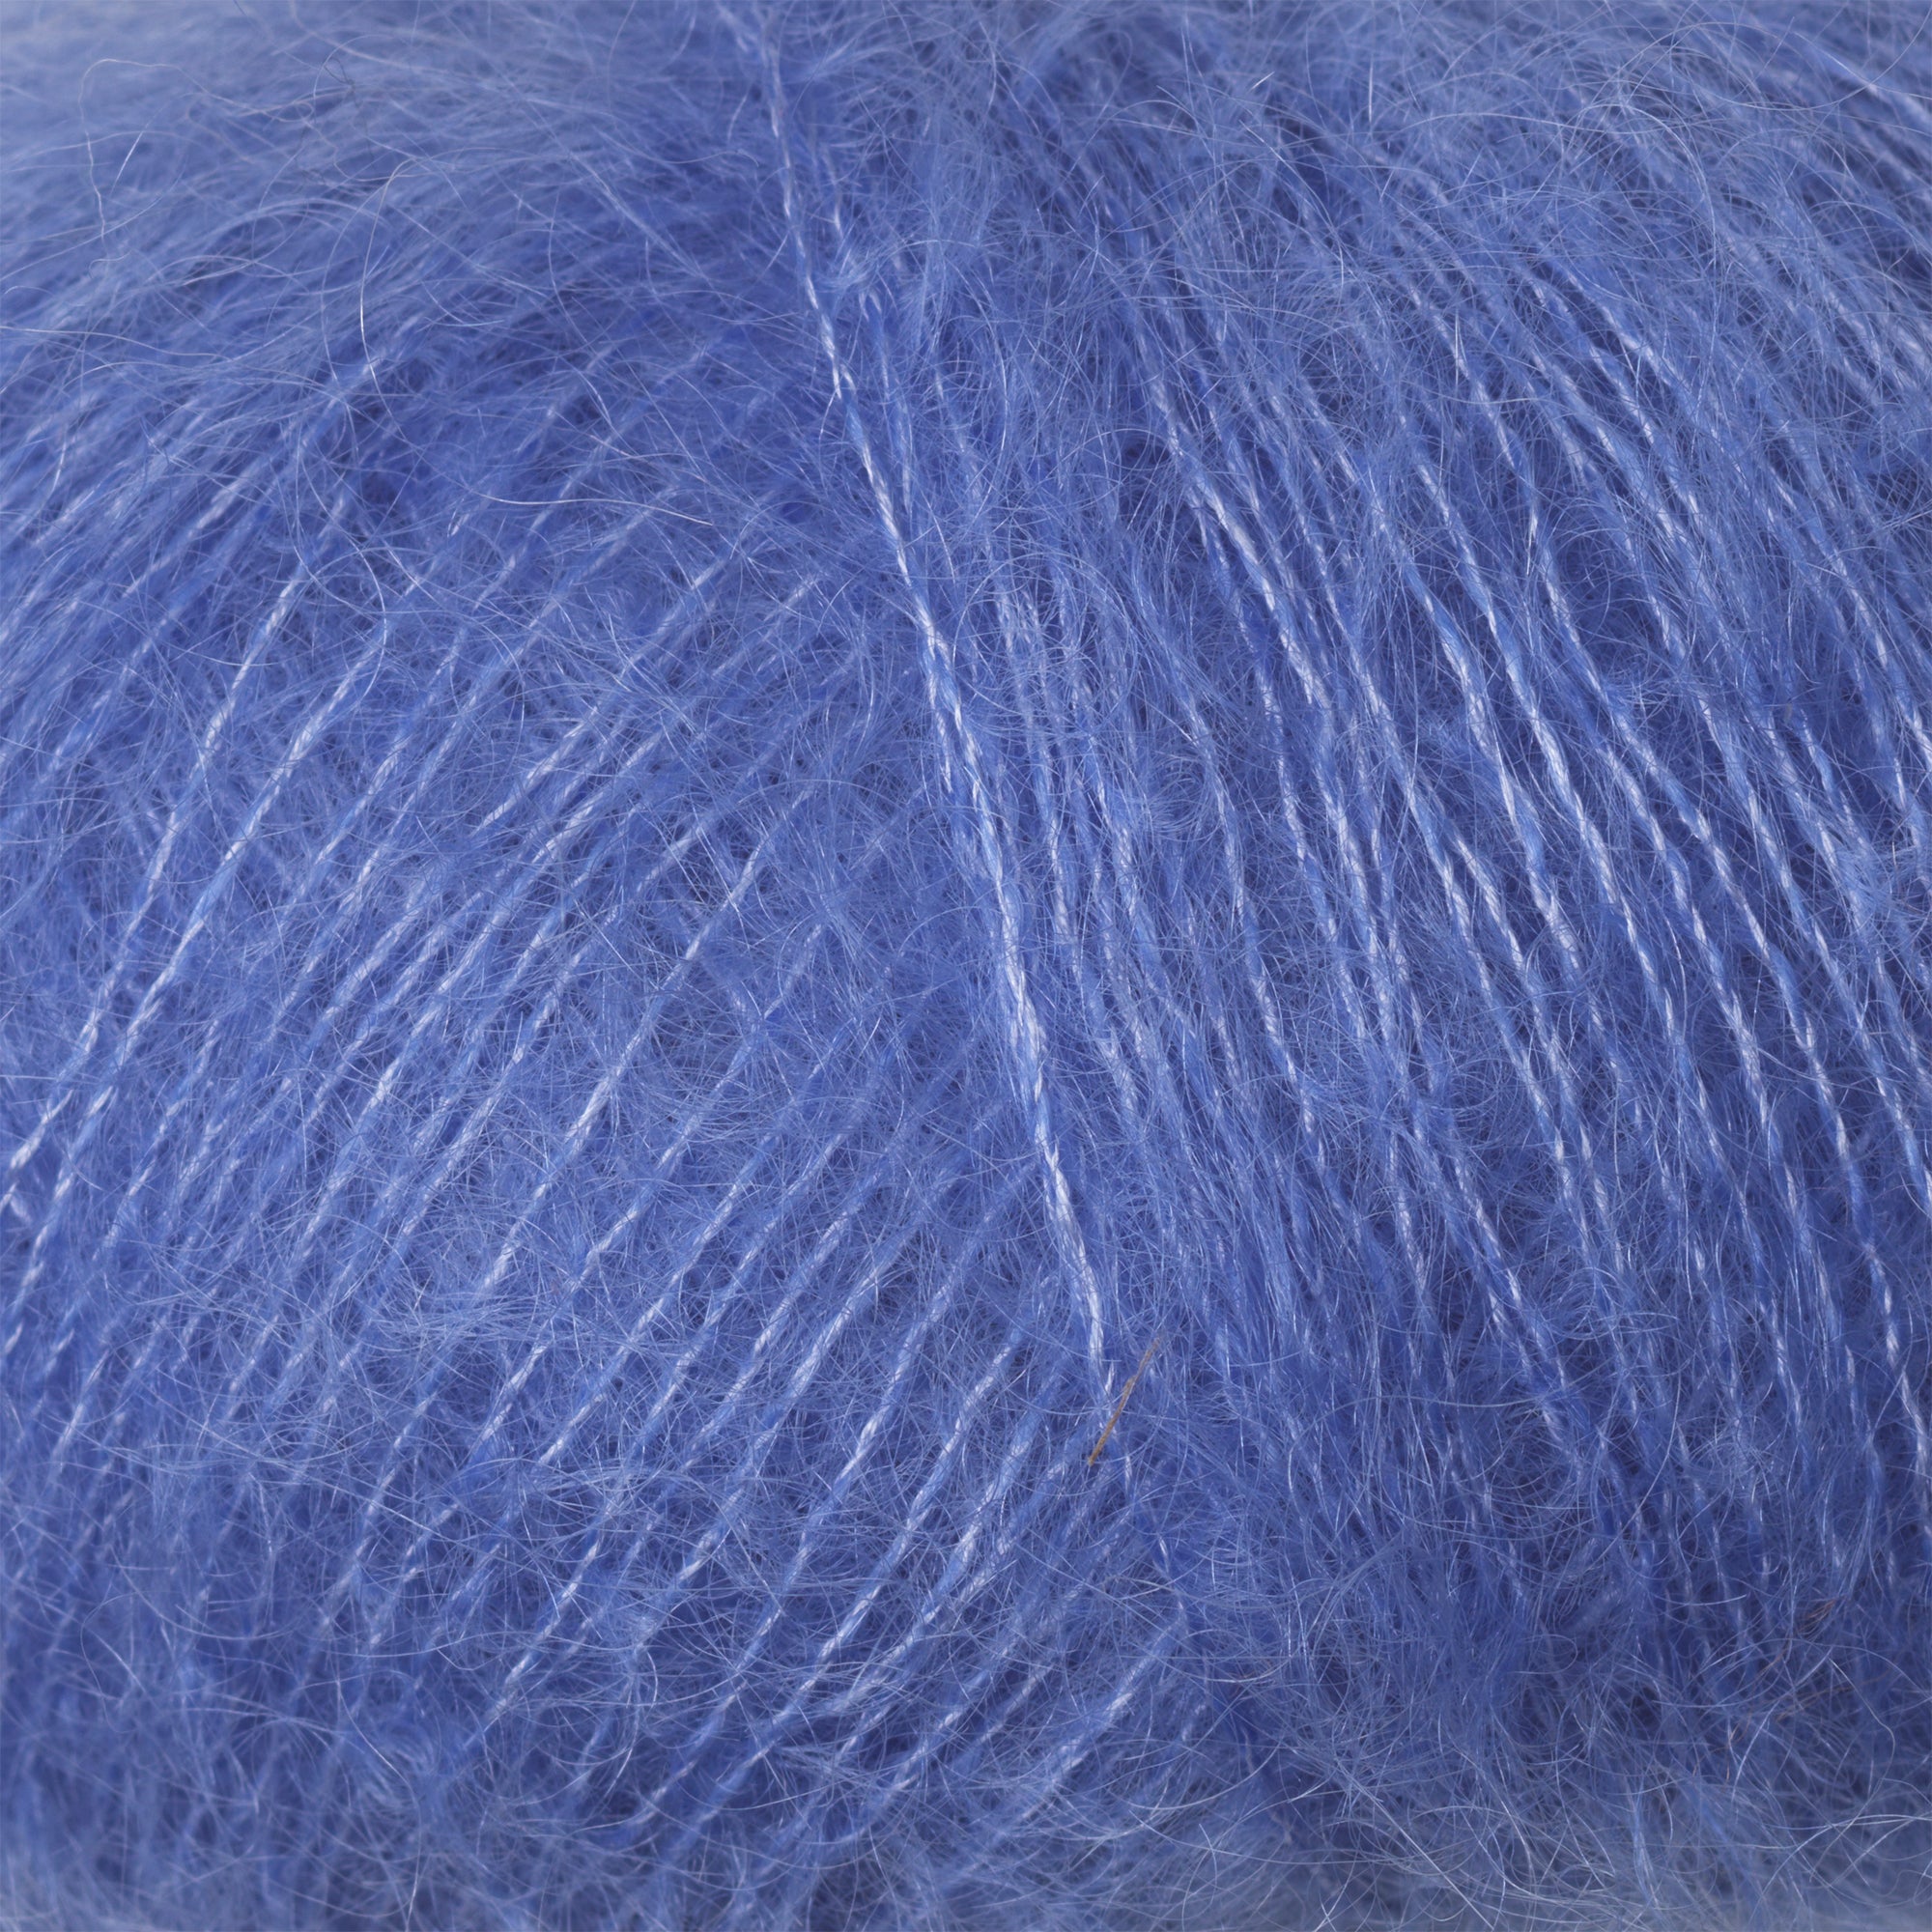 Knitting for Olive Soft Silk - Lavender Blue